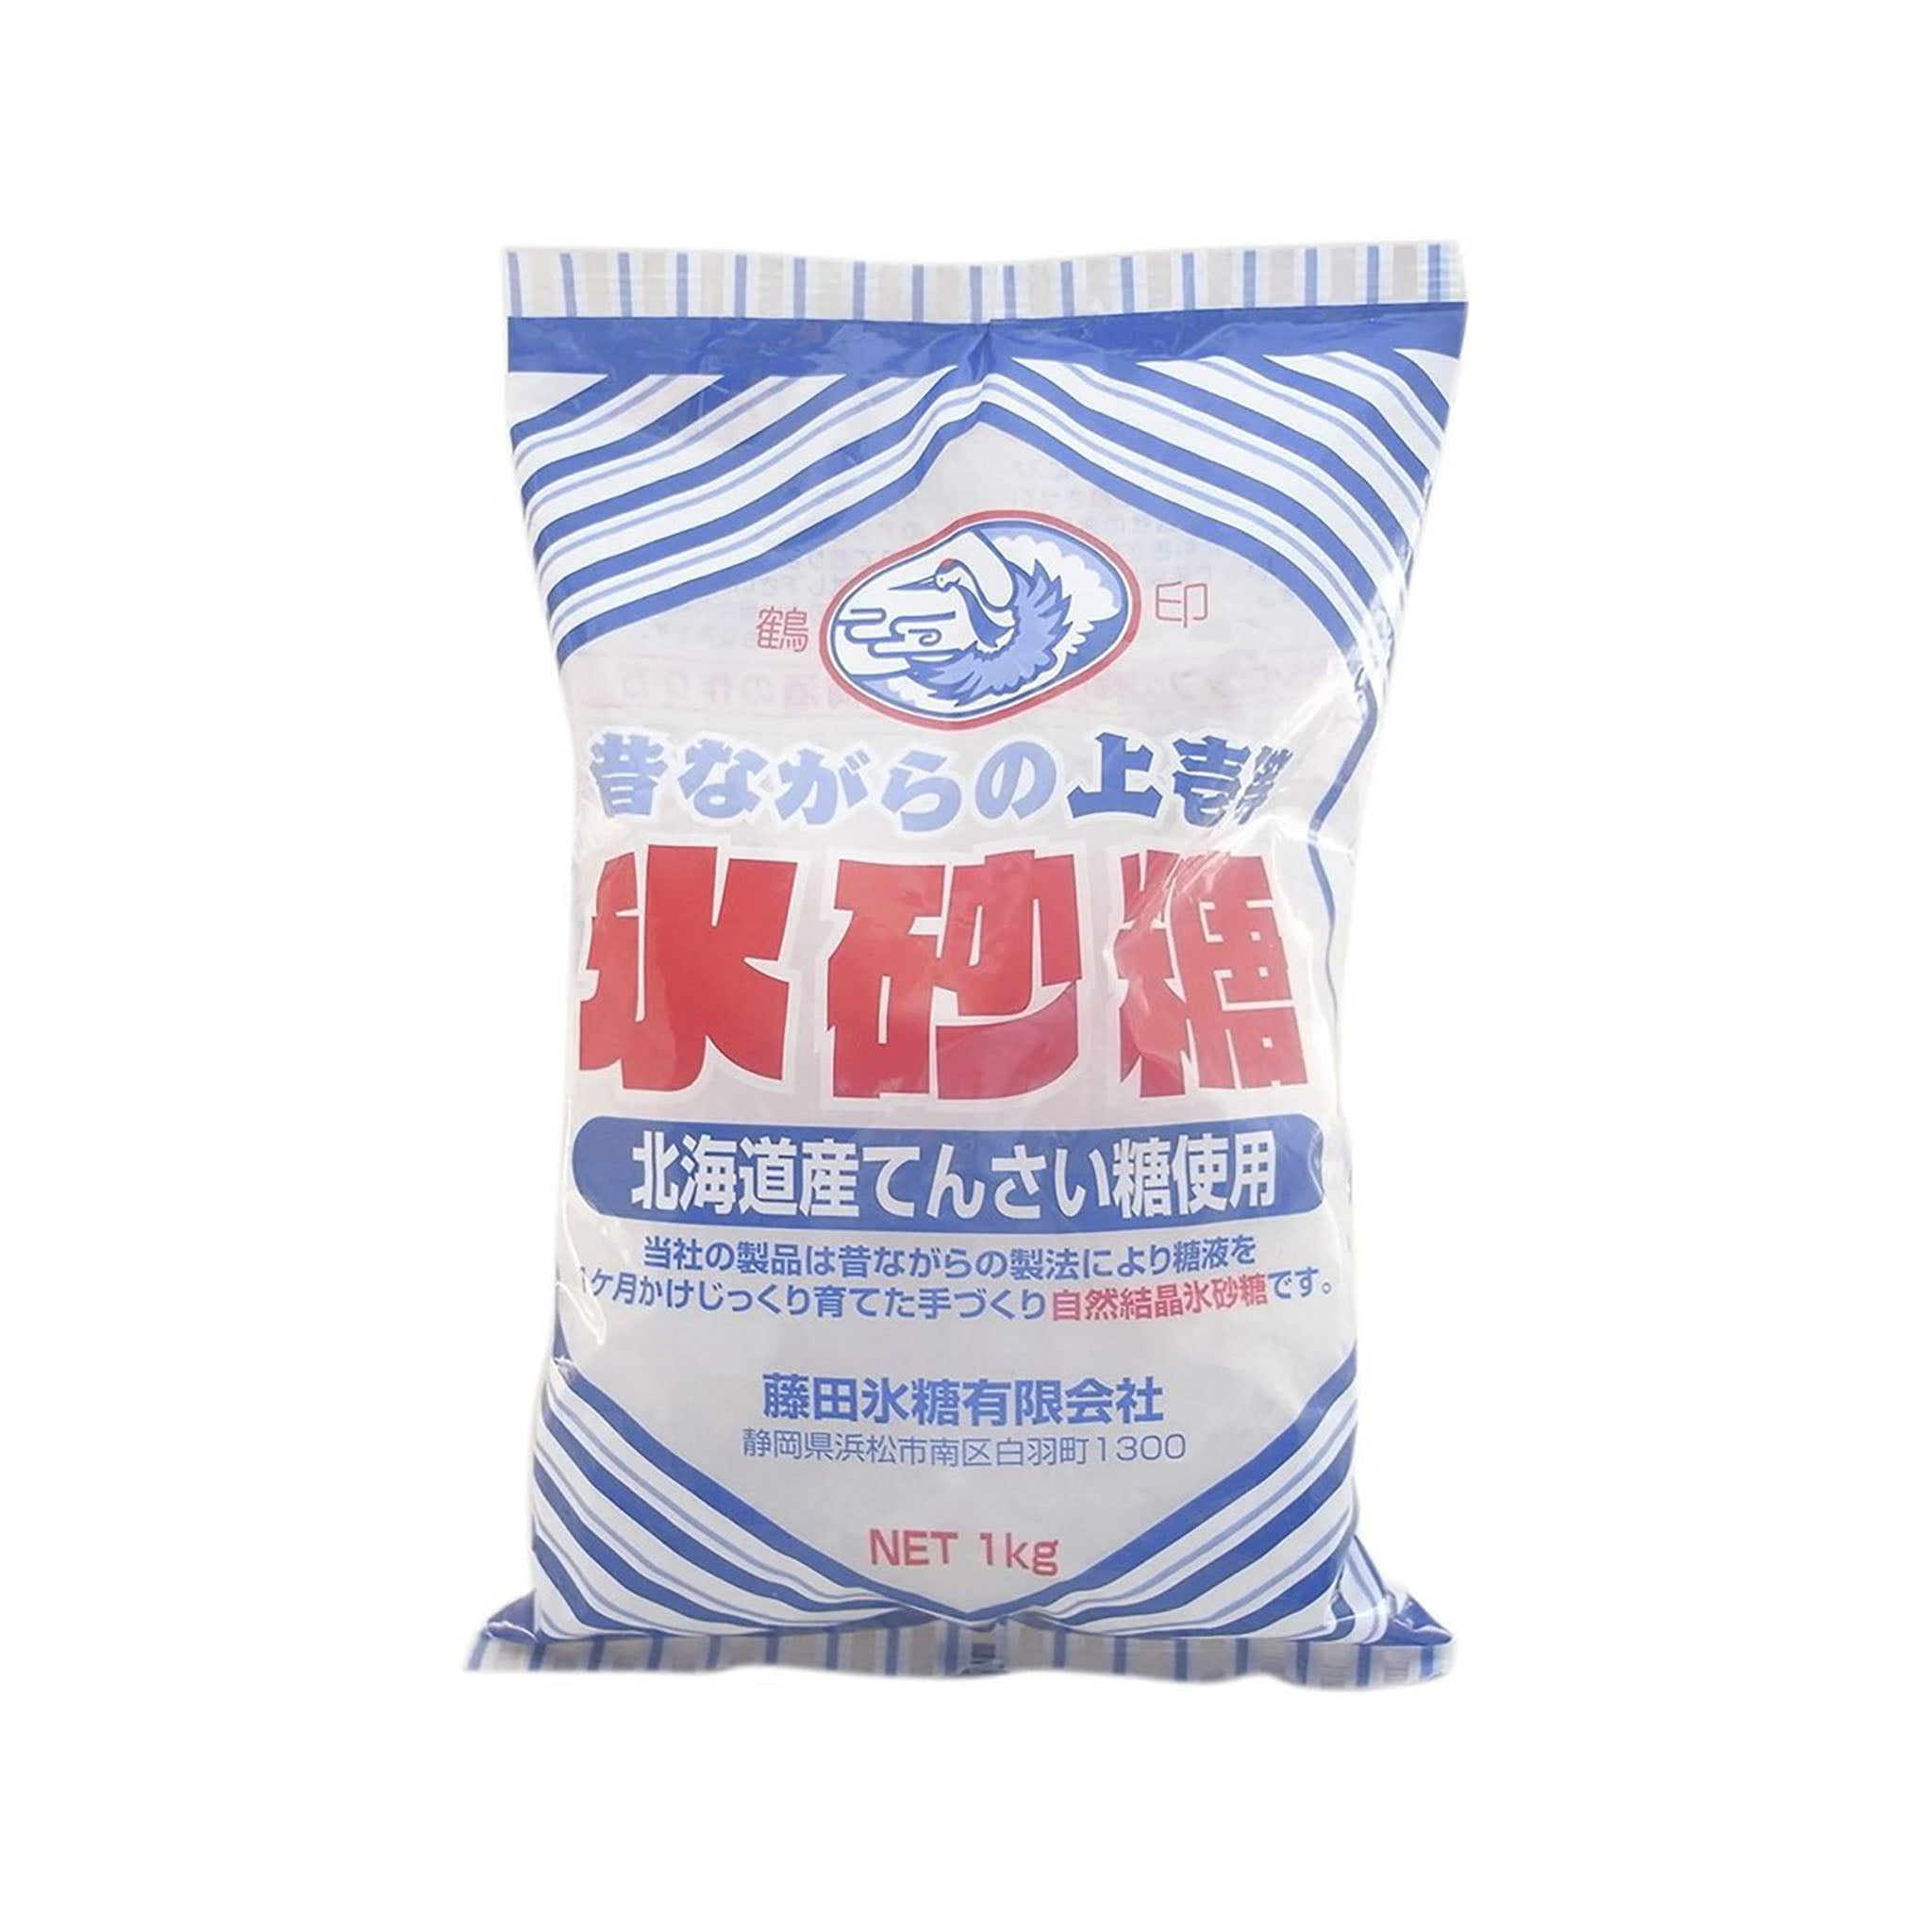 氷砂糖 まとめ買い 送料無料 クリスタル氷砂糖 2ケース 1Kg×20個 中日本氷糖株式会社(020) 『GCC』 - 砂糖、甘味料